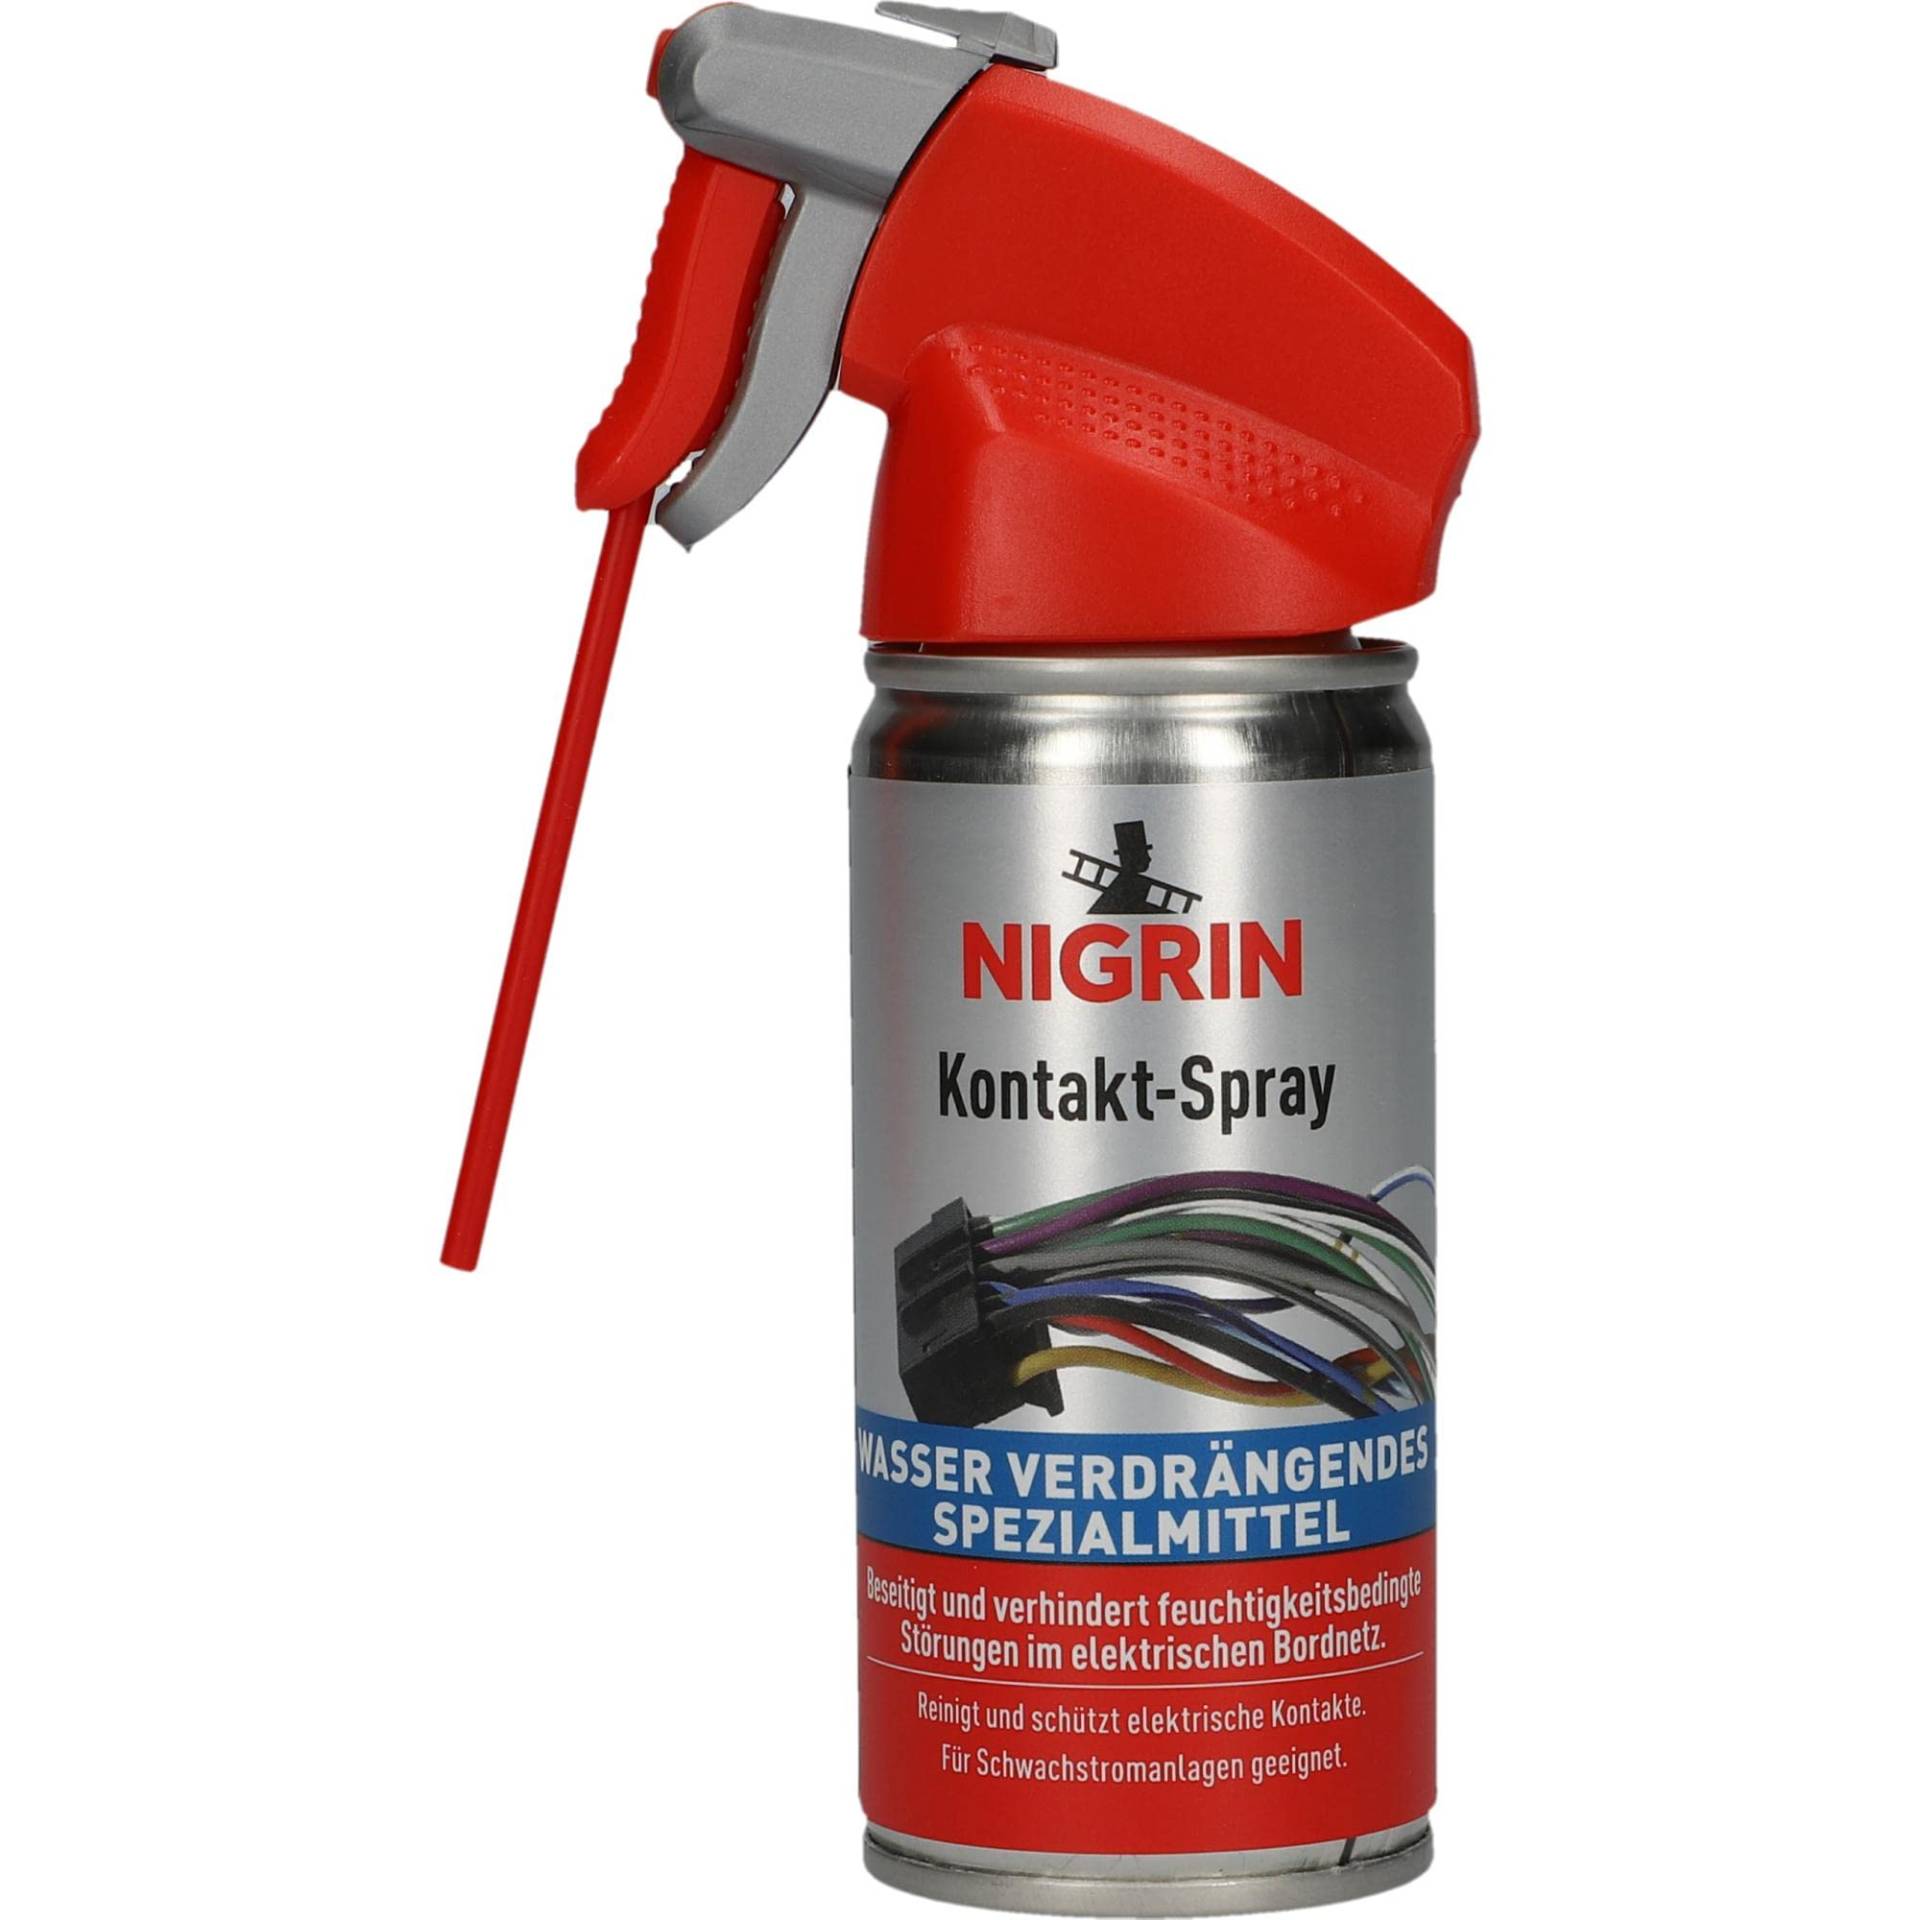 NIGRIN Kontakt-Spray für Elektronik, 100 ml, zur Reinigung und Schutz von elektronischen Kontakten von NIGRIN